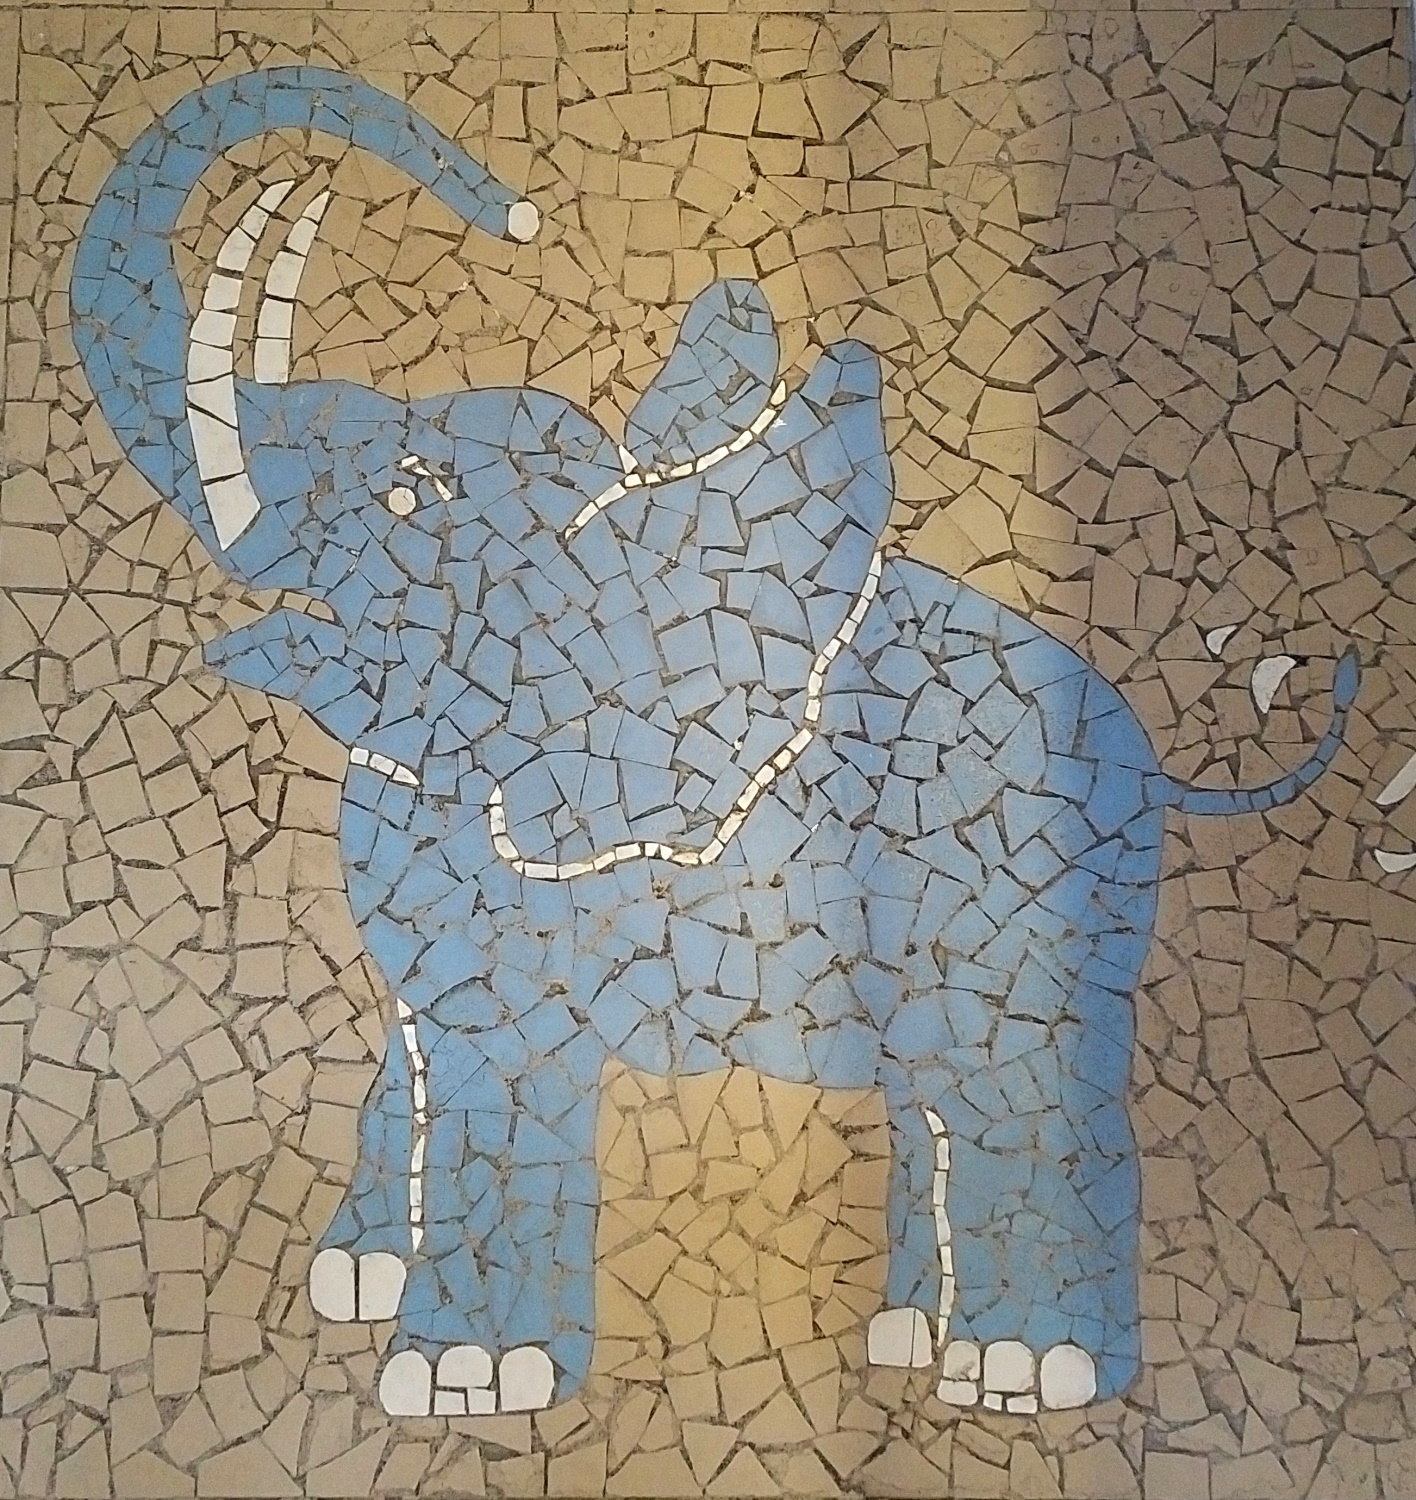 Manufakturen-Blog: Henry's Eismanufaktur Testeisdiele Eisdiele Saarbrücken Fliesenschmuck Blauer Elefant (Foto: Wigmar Bressel)